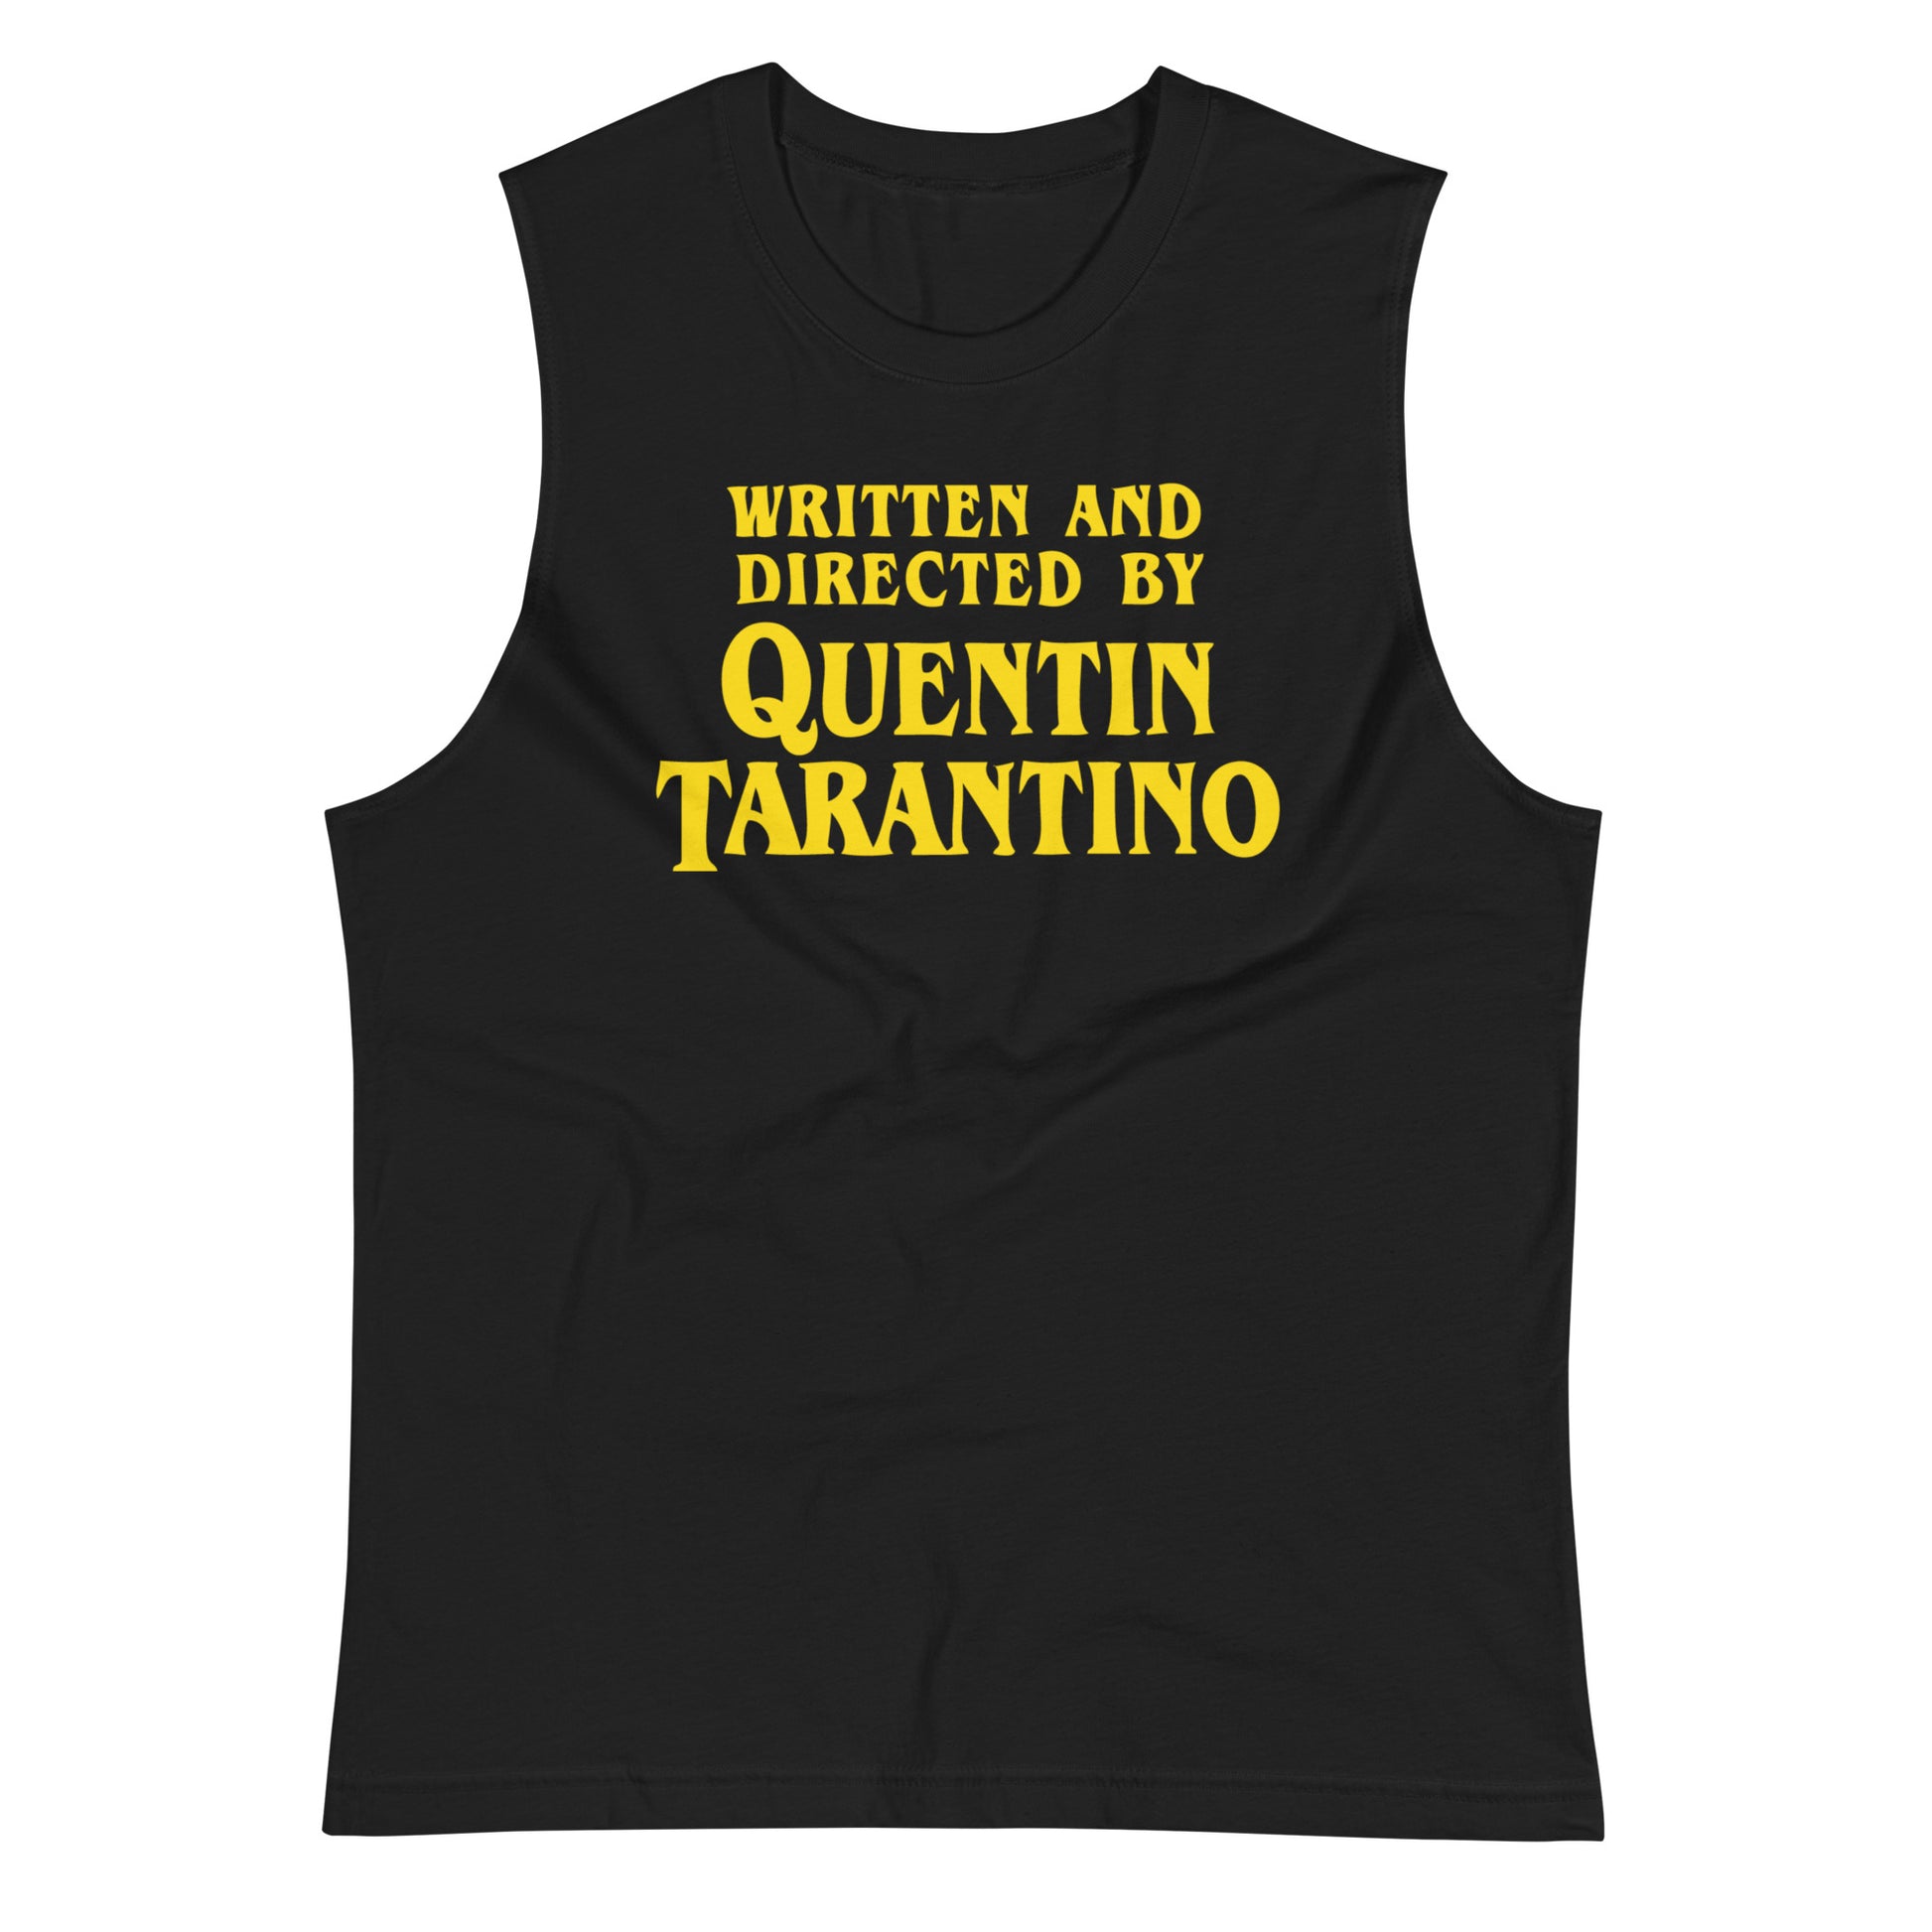 Camiseta sin Mangas de Quentin Tarantino, Nuestras Camisetas son unisex disponibles en la mejor tienda online, compra ahora en Superstar!